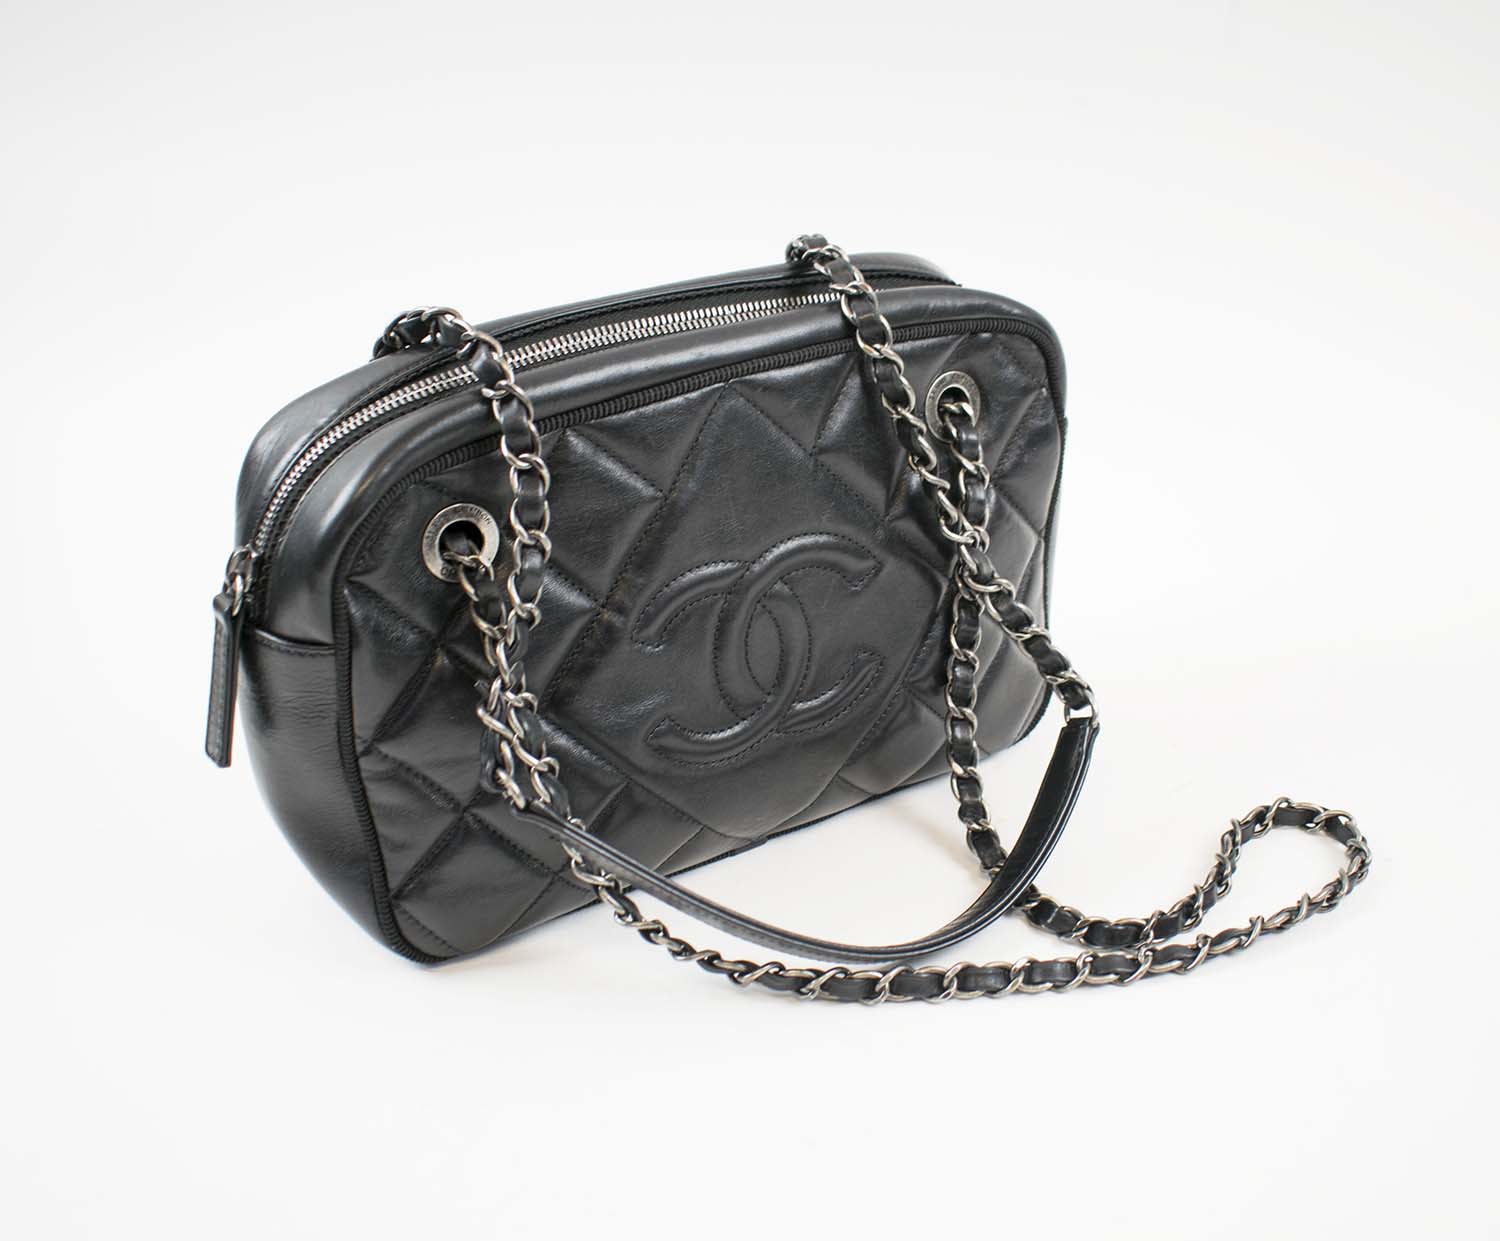 Chanel Black Vintage Shoulder Bag Authentic for Sale in Houston